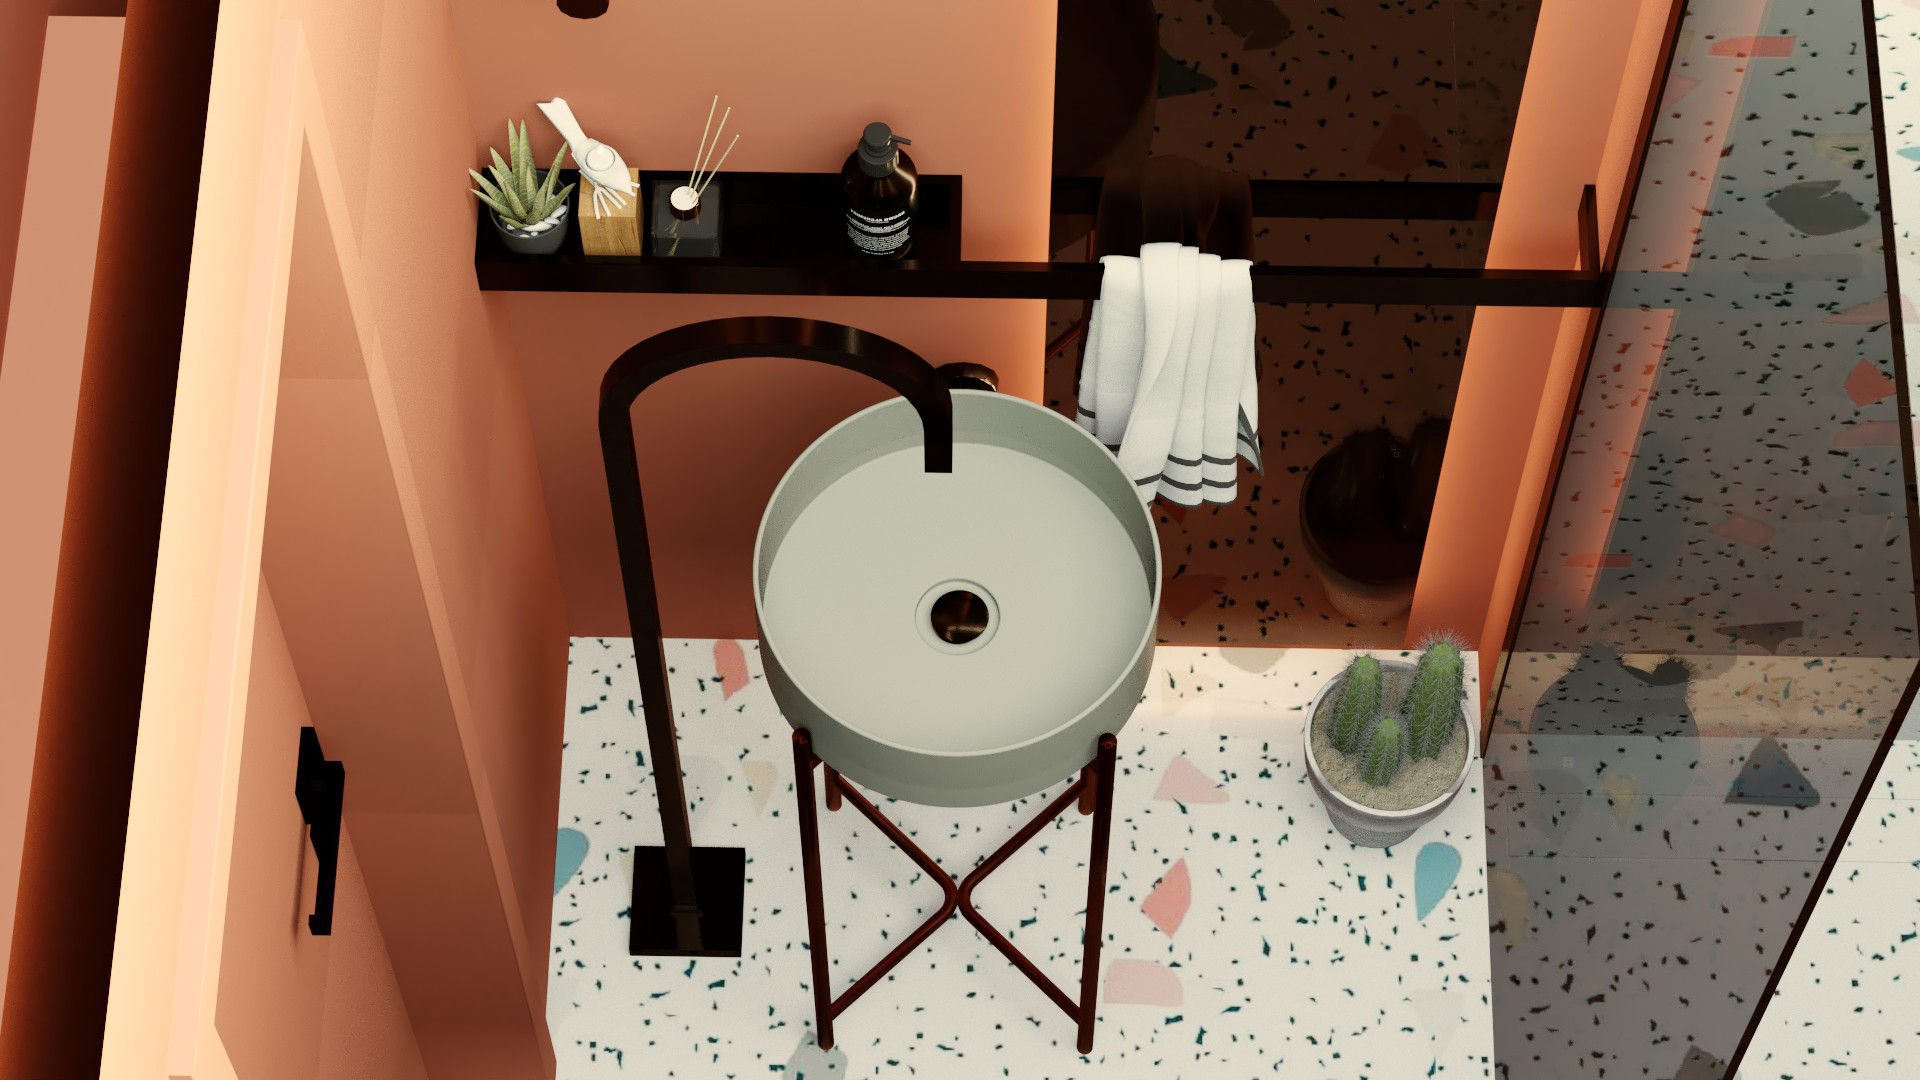 Casa de banho minimalista, Letícia Gurgel design de interiores Letícia Gurgel design de interiores Baños de estilo minimalista